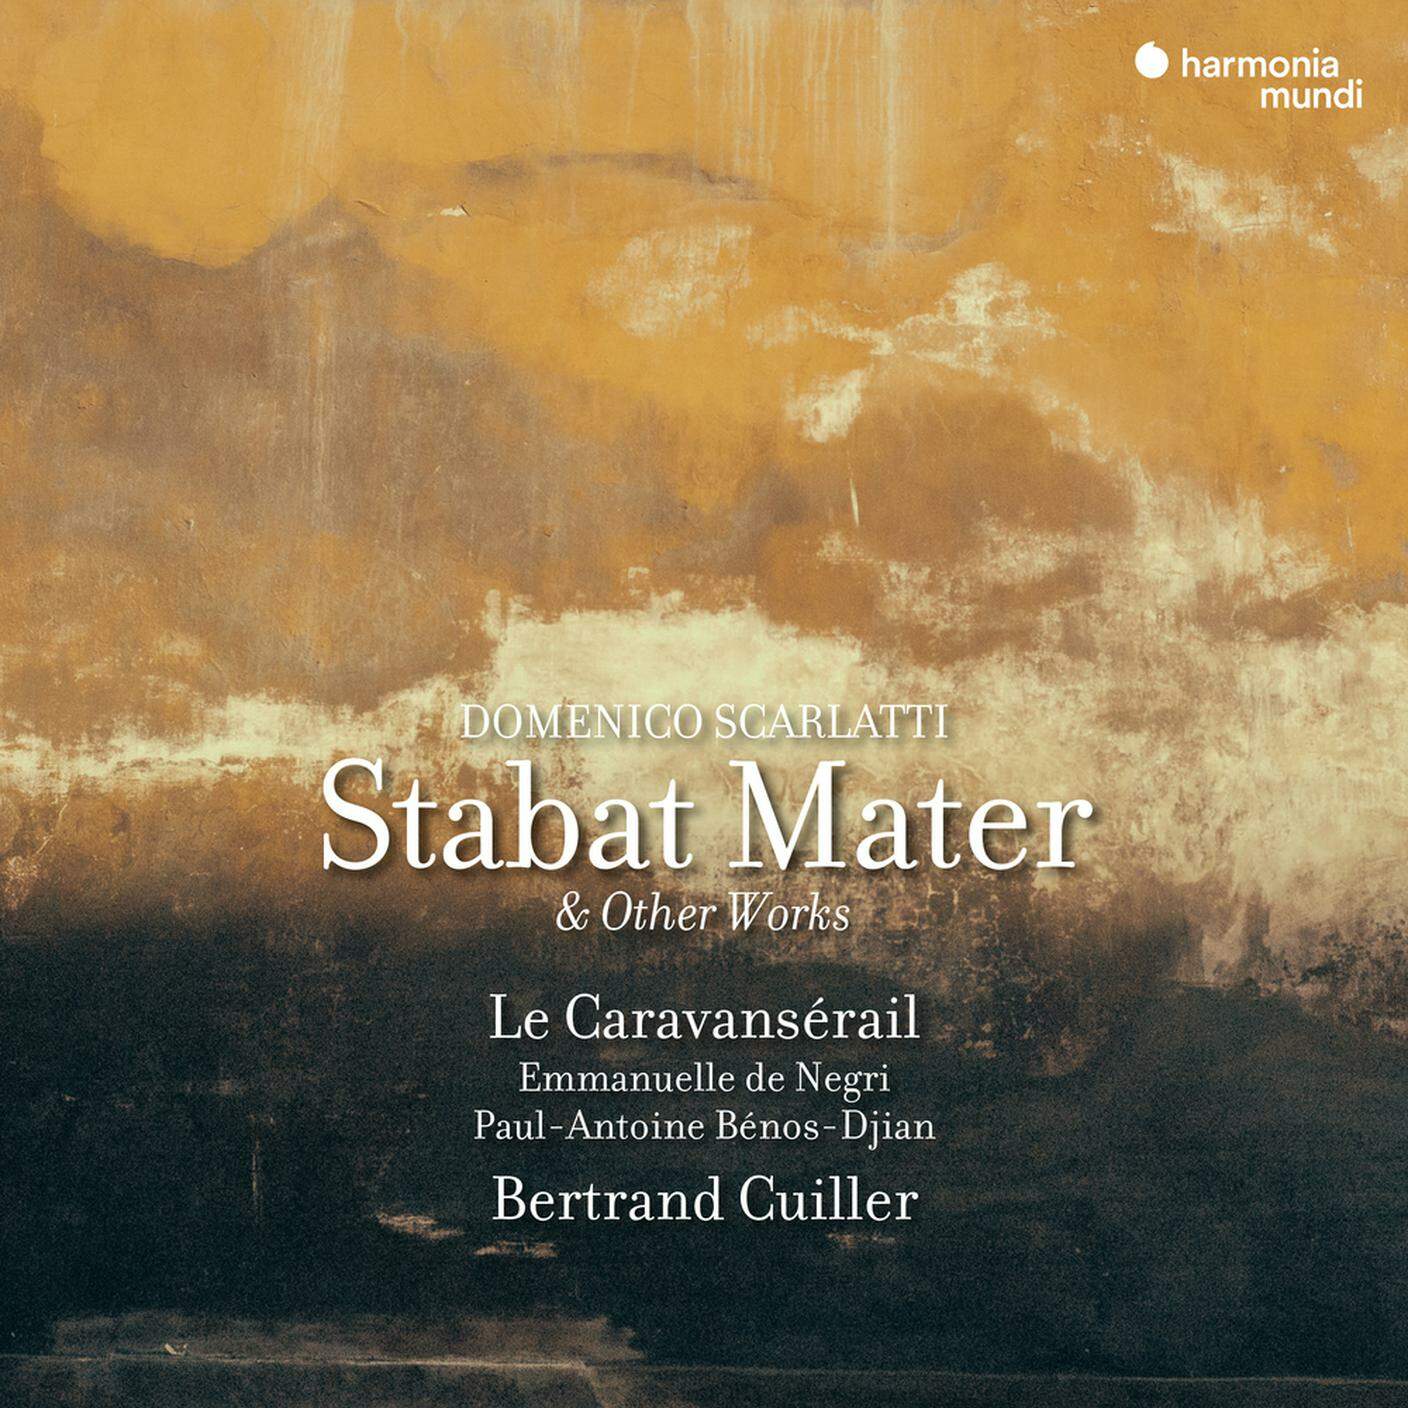 "Domenico Scarlatti. Stabat Mater & other Works" di Le Caravansérail, Harmonia Mundi (dettaglio di copertina)